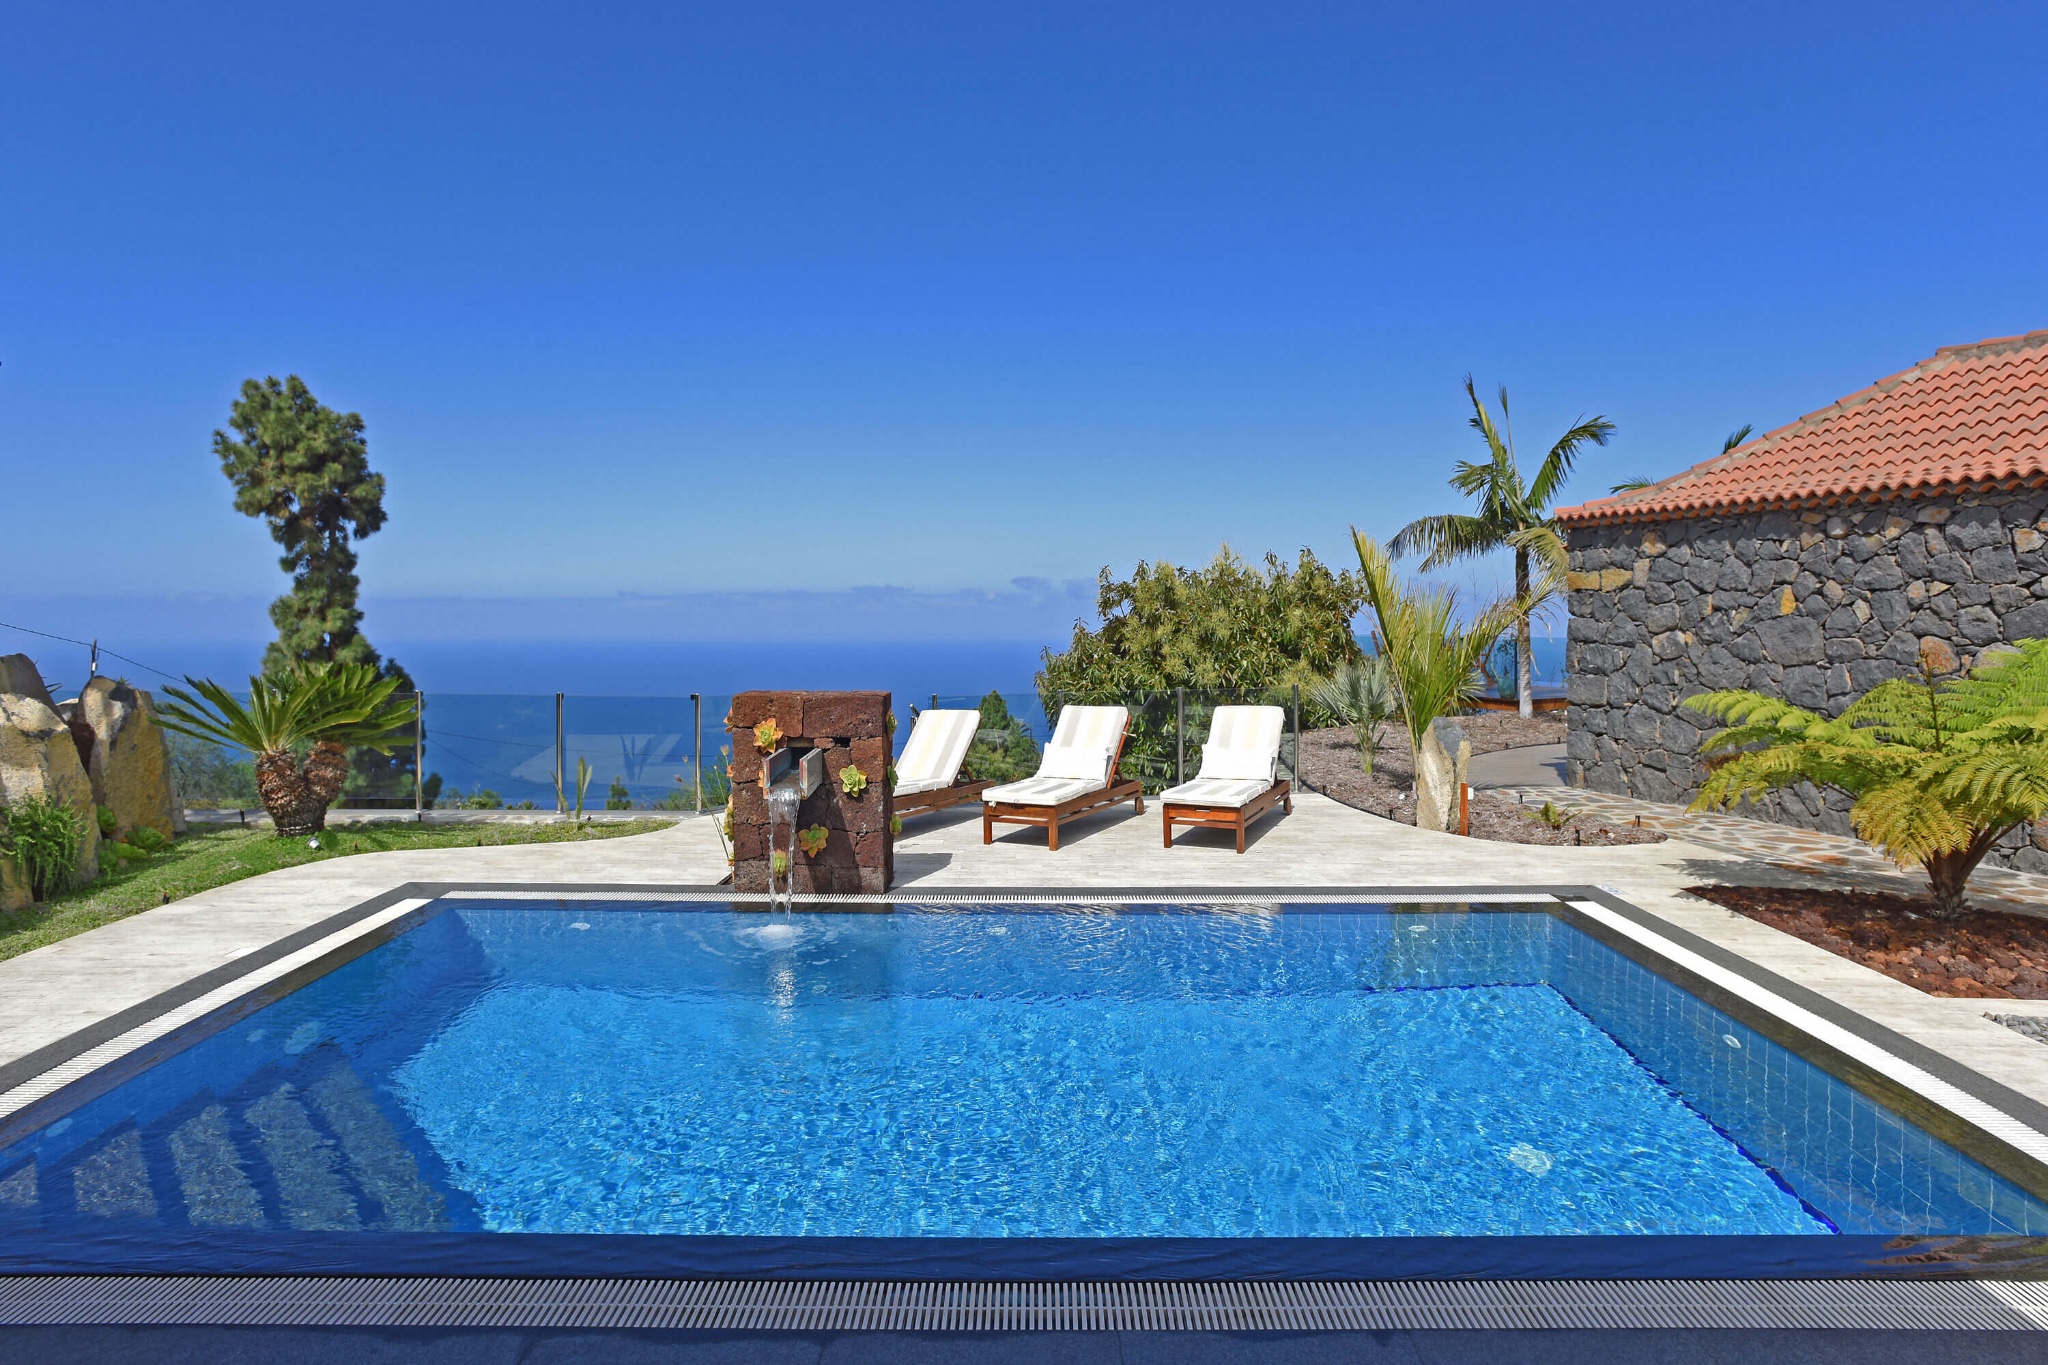 Geräumiges Ferienhaus mit stilvoller Einrichtung, einem schönen Garten voller Palmen und herrlichem Panoramablick auf das Meer und die Berge